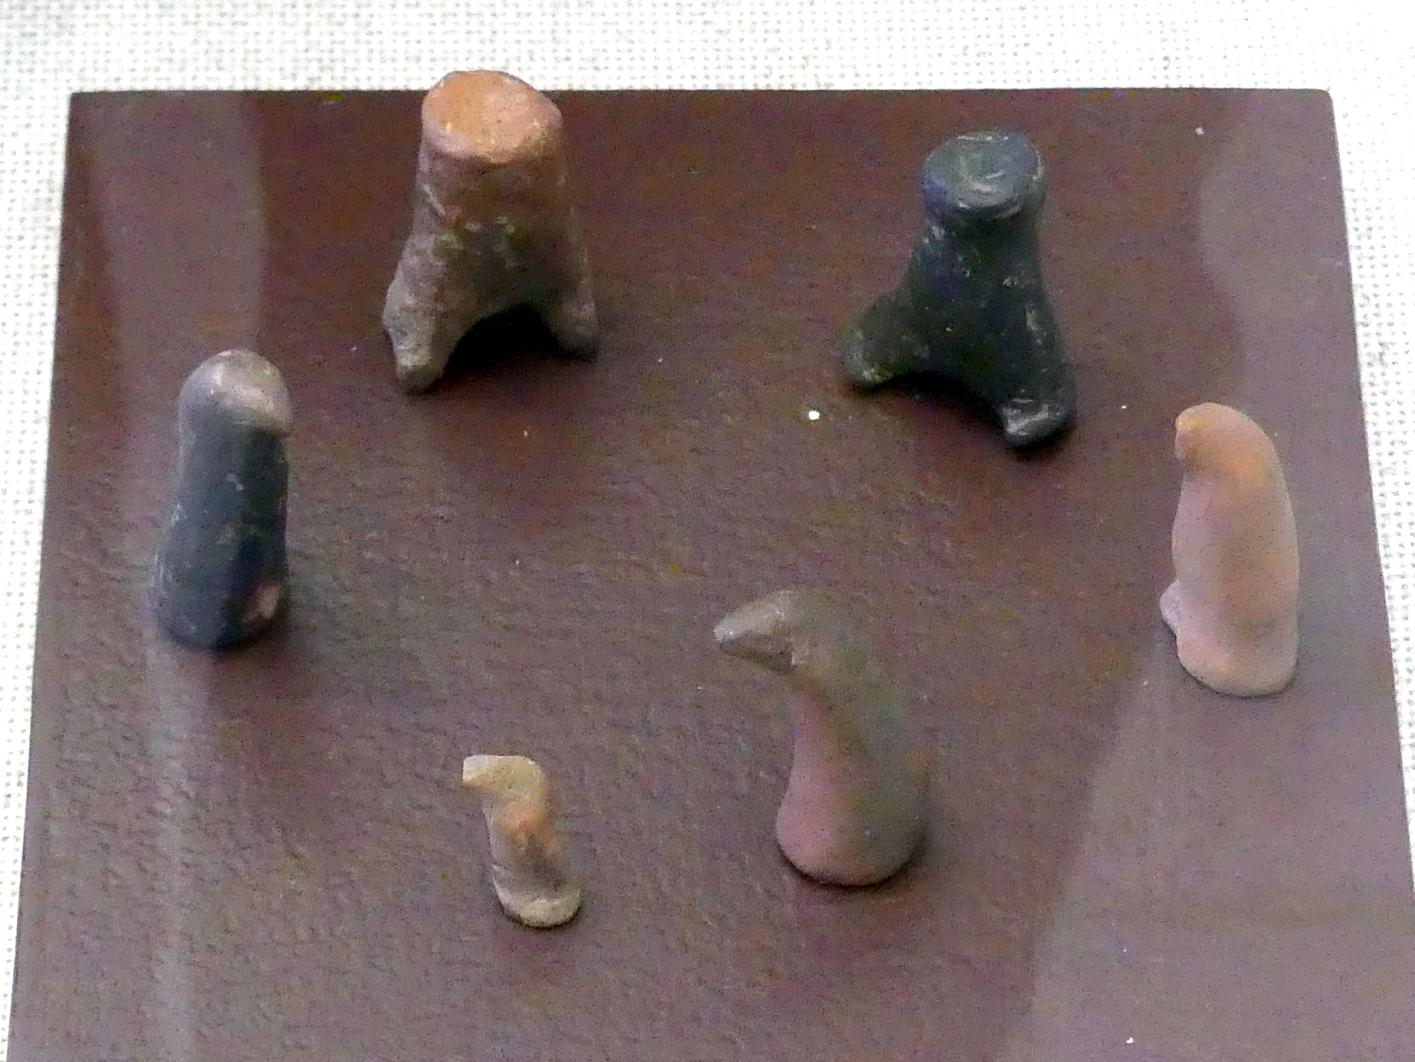 Spielzeugfigürchen, Hallstattzeit, 700 - 200 v. Chr.